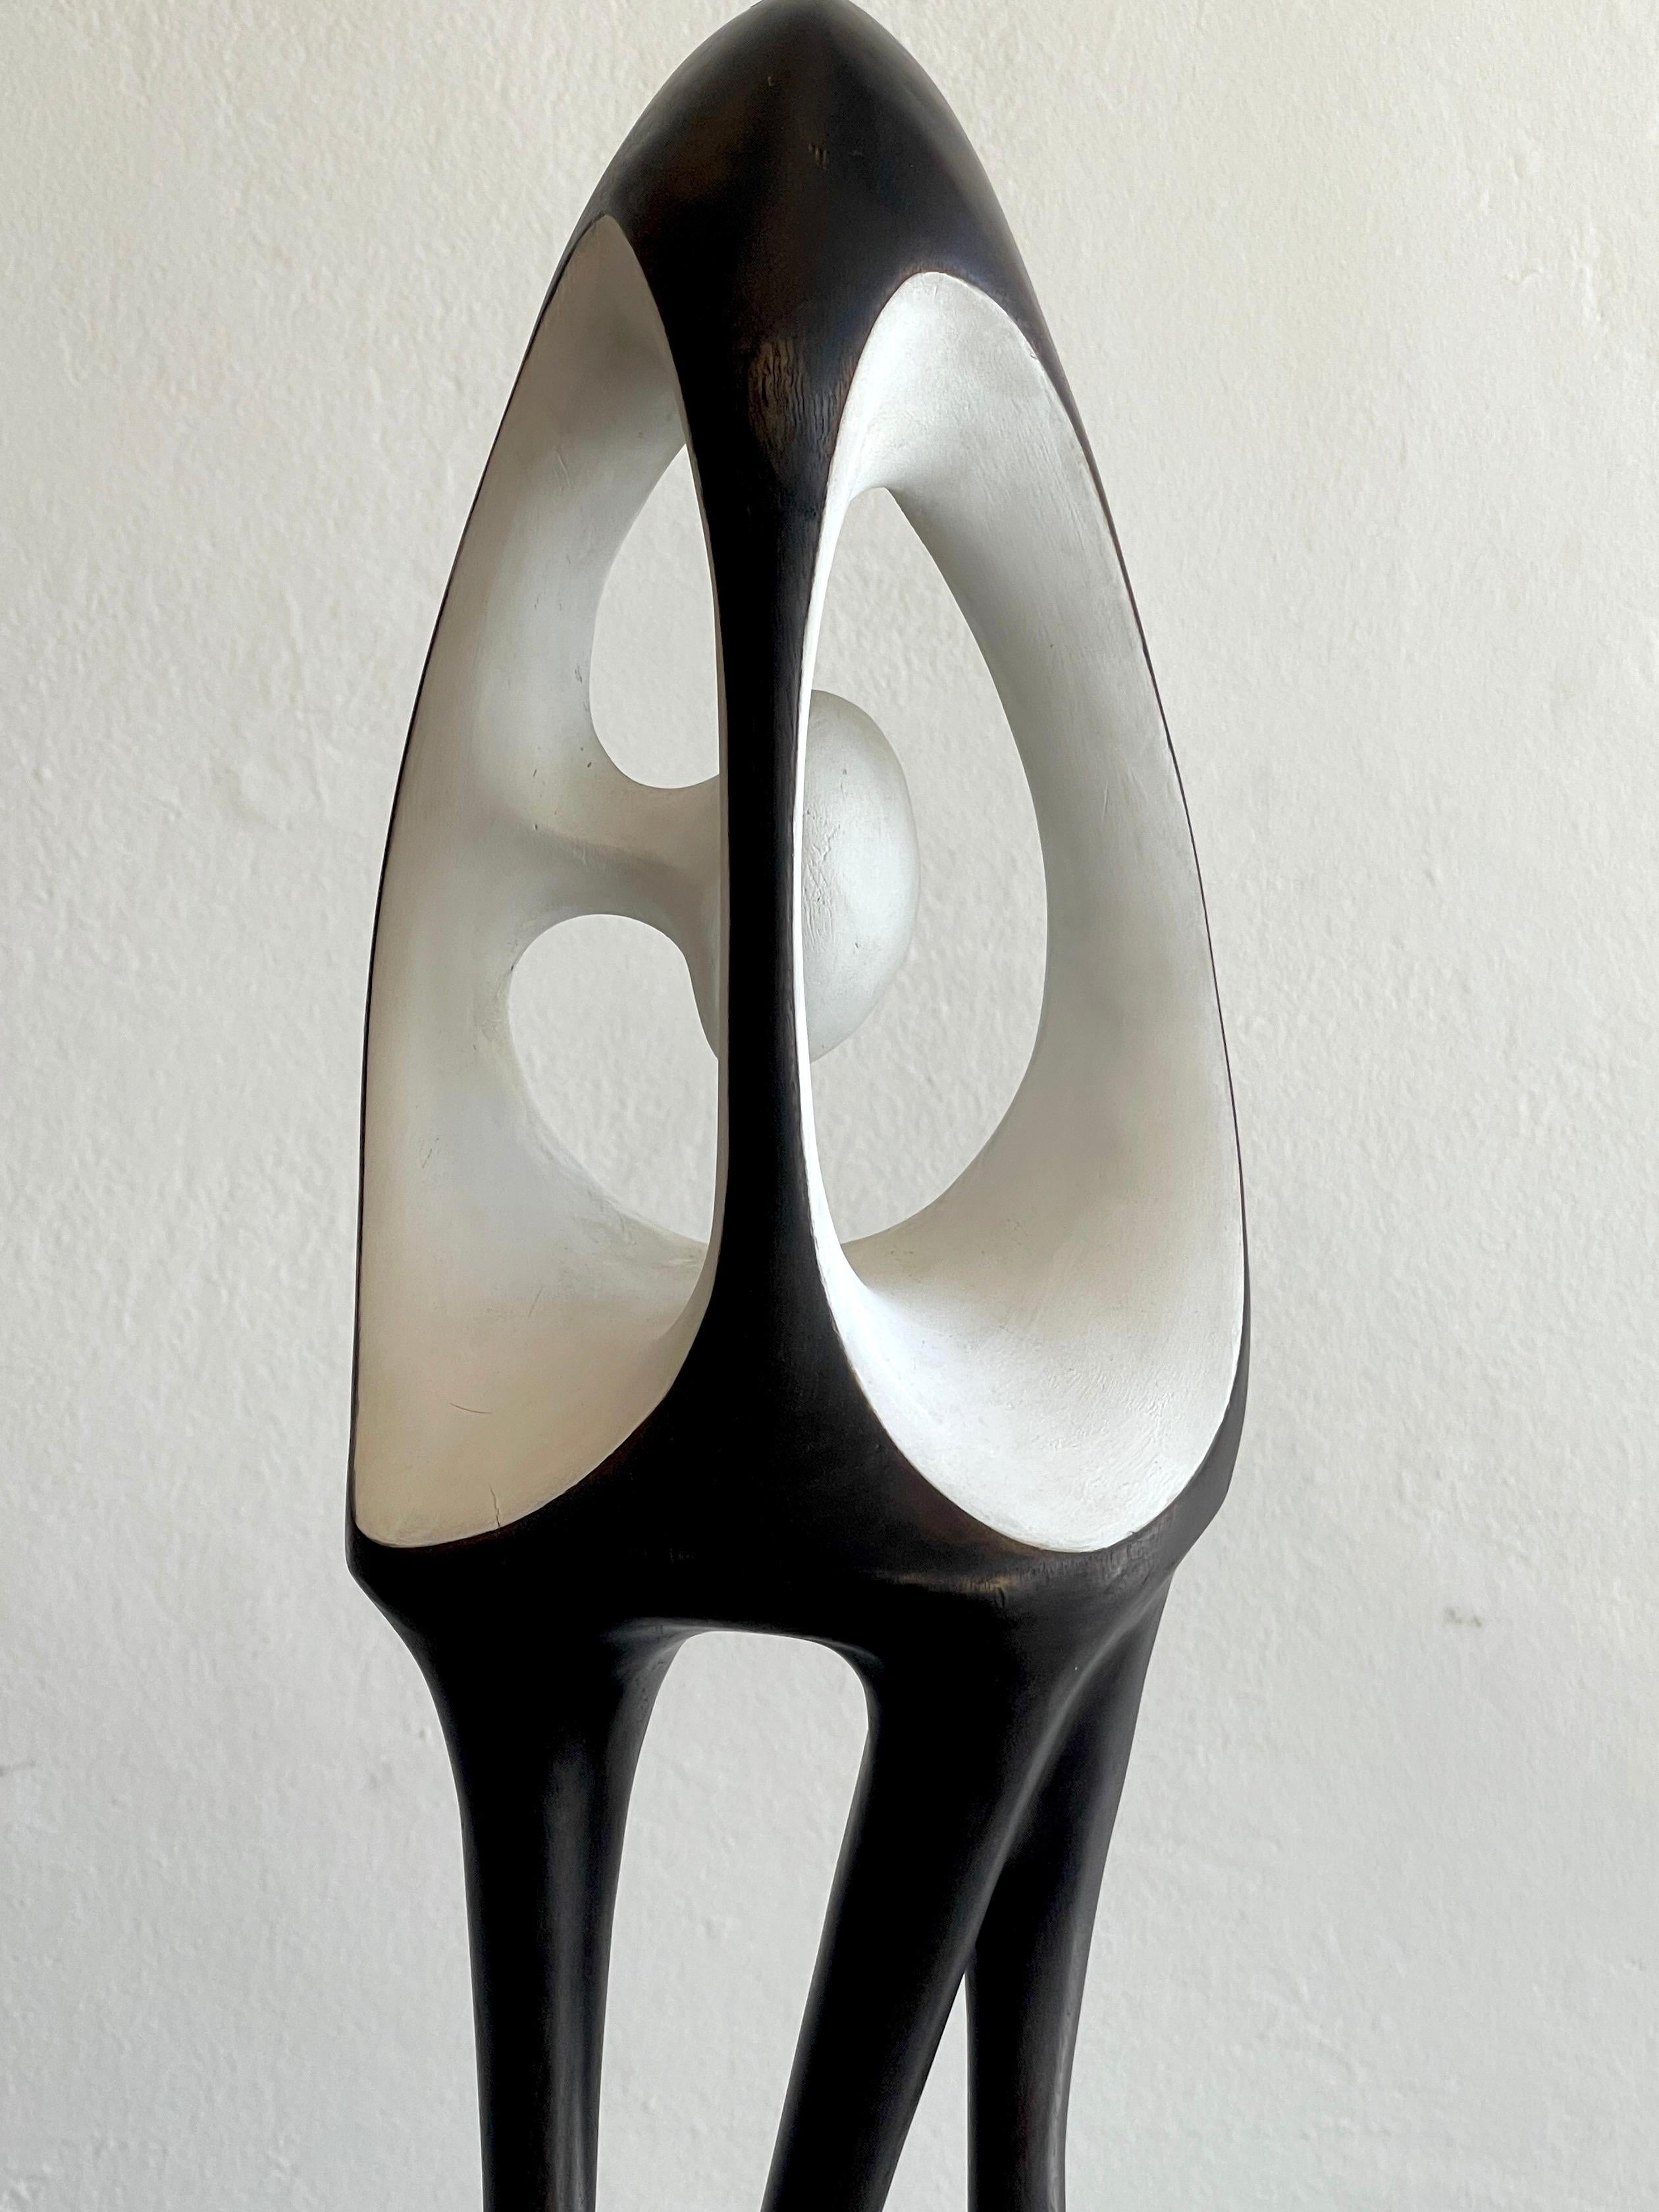 Agustín Cárdenas Abstract Polychromed Wood Sculpture 12